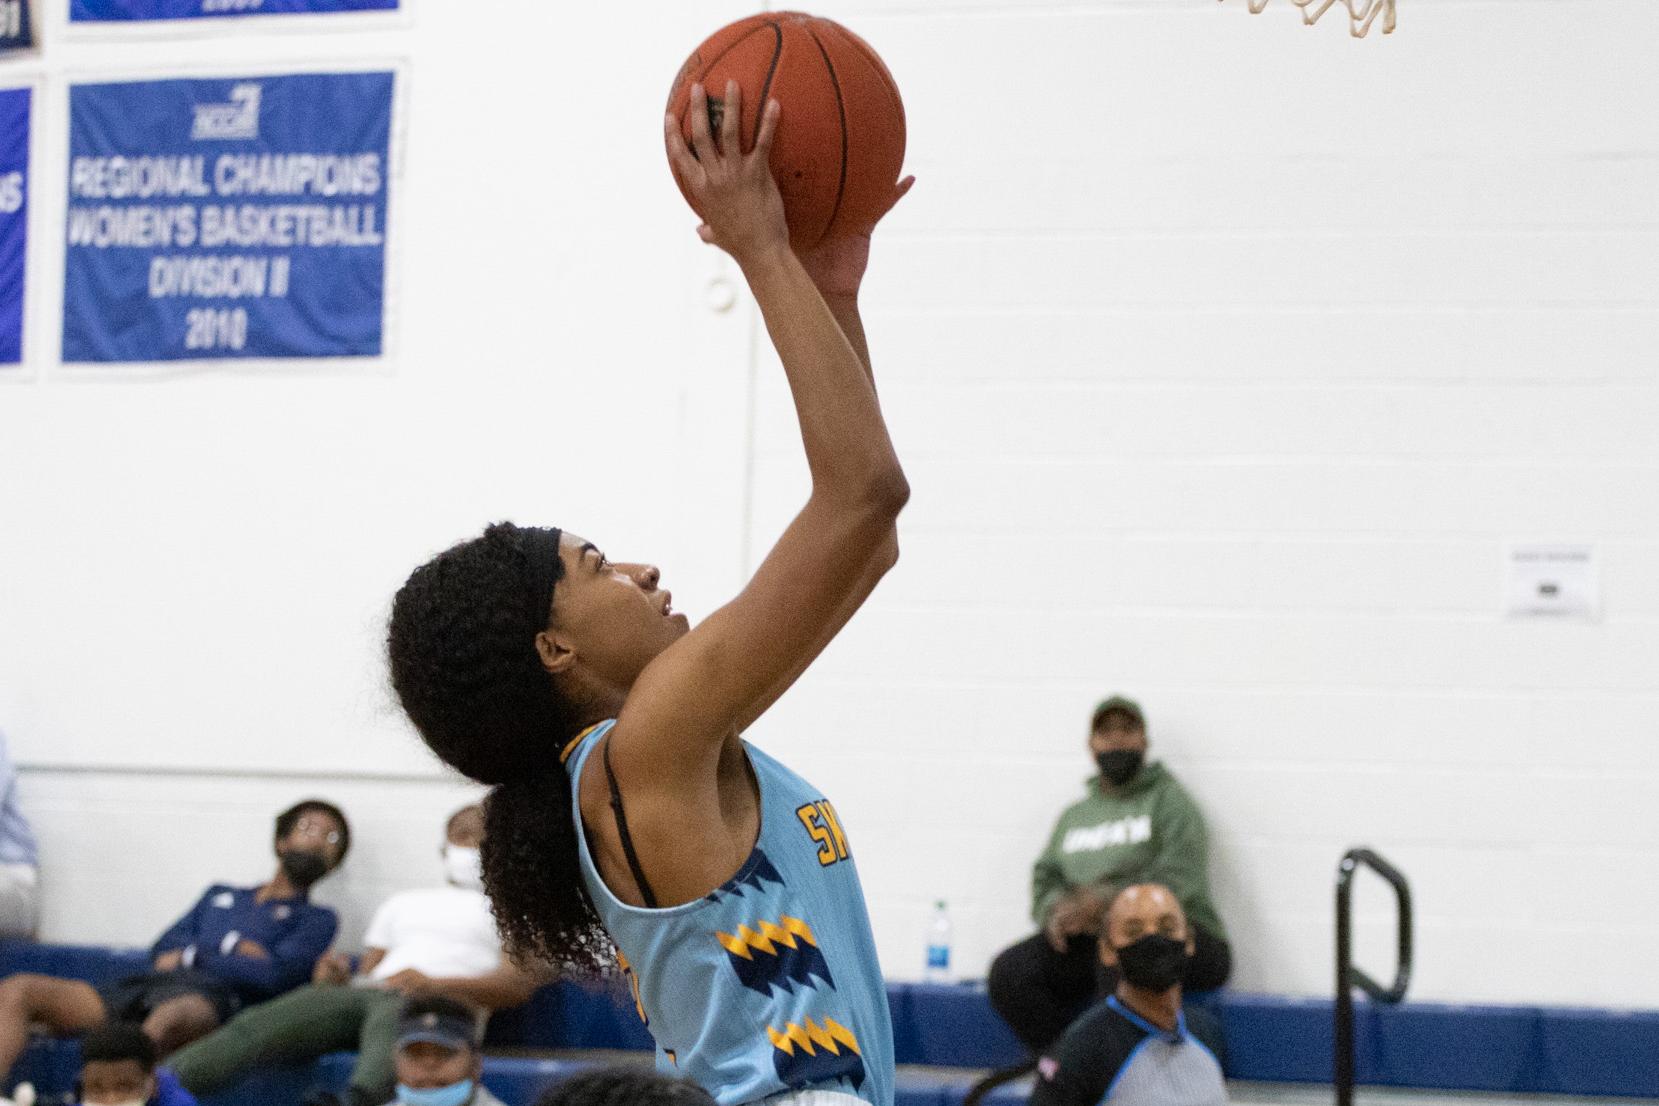 Women’s basketball picks up win No. 20 at Columbia